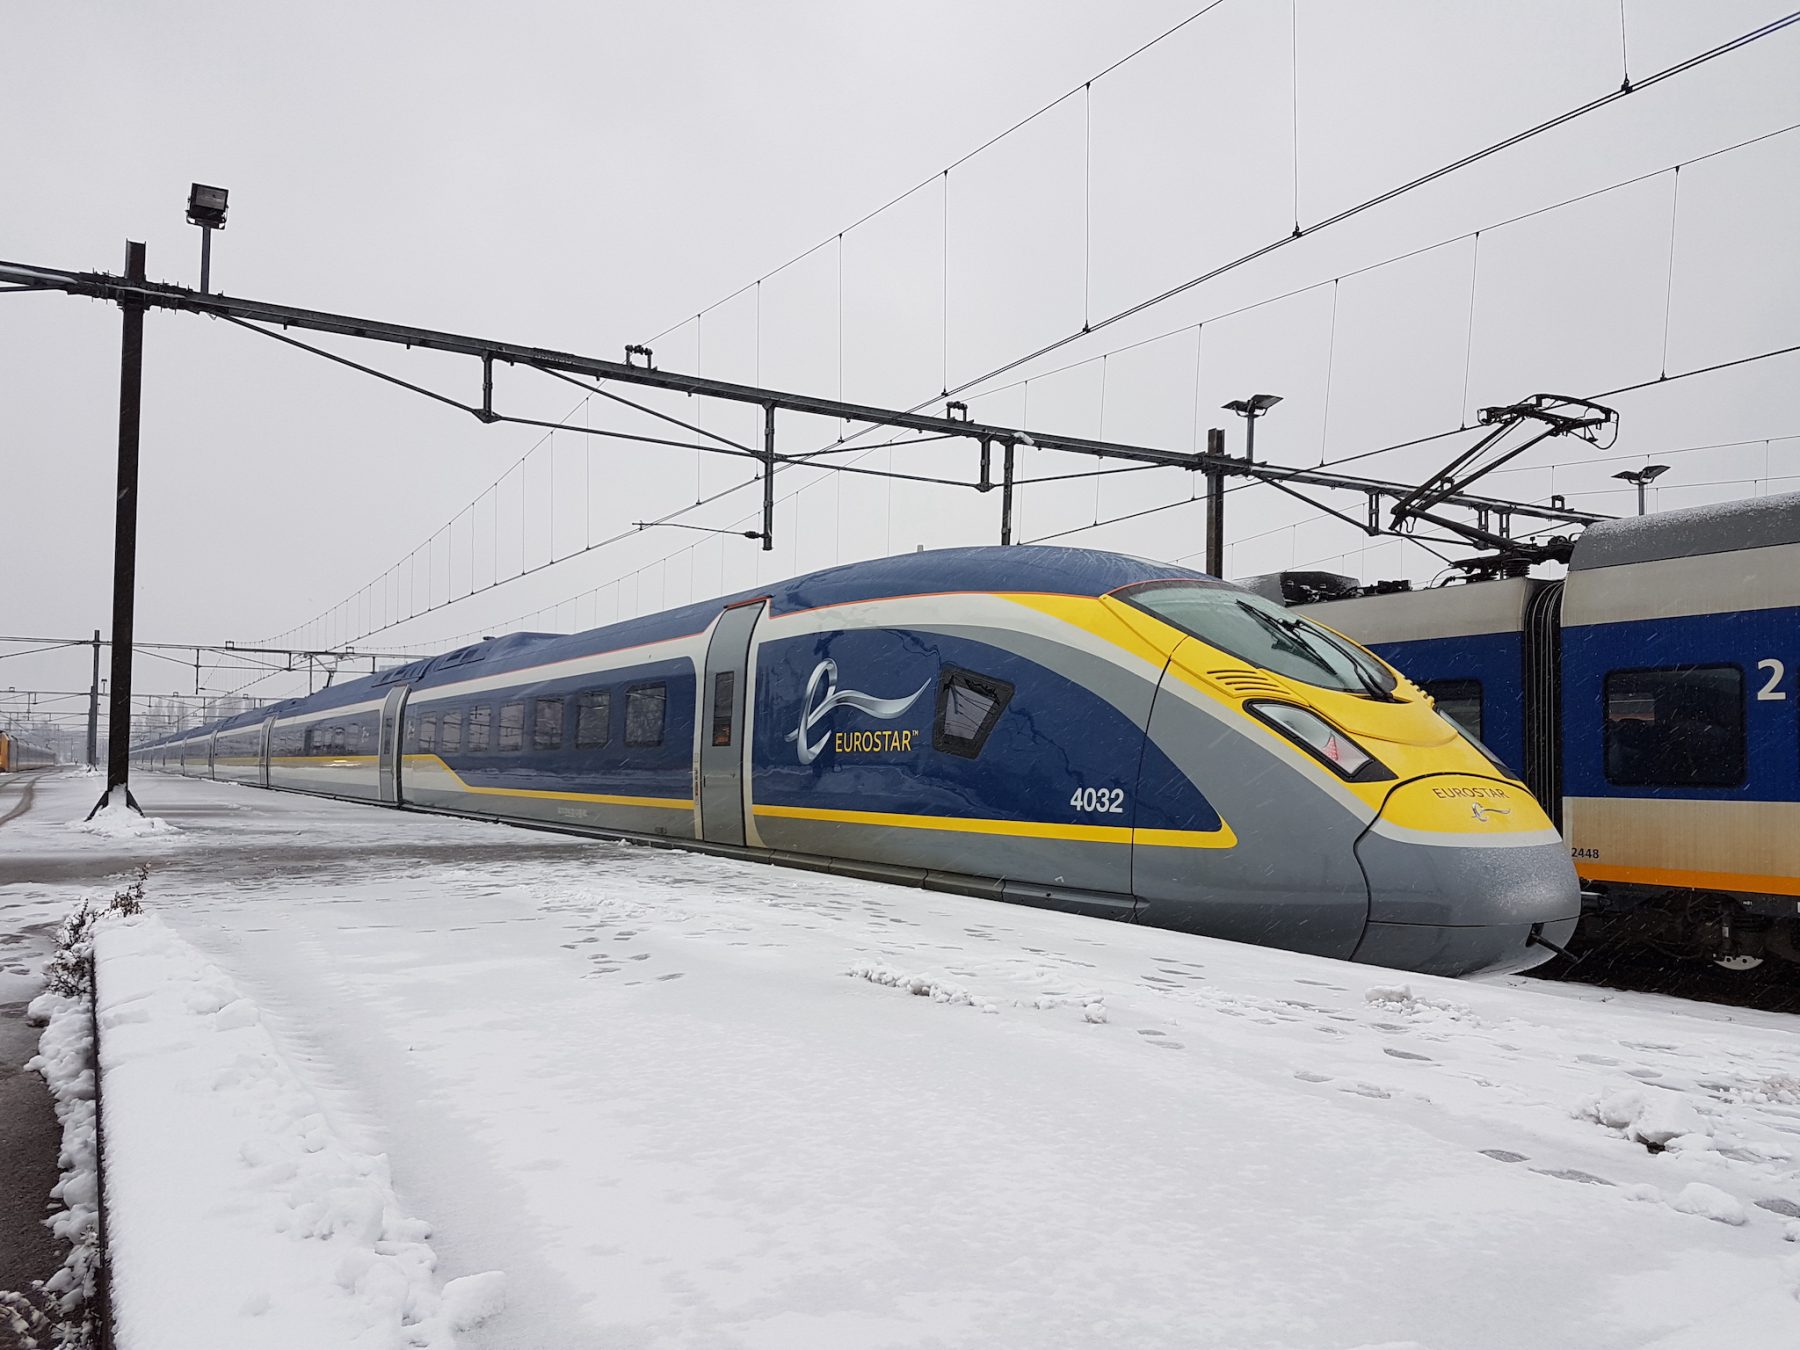 Met de trein naar de sneeuw, dat is Eurostar Snow